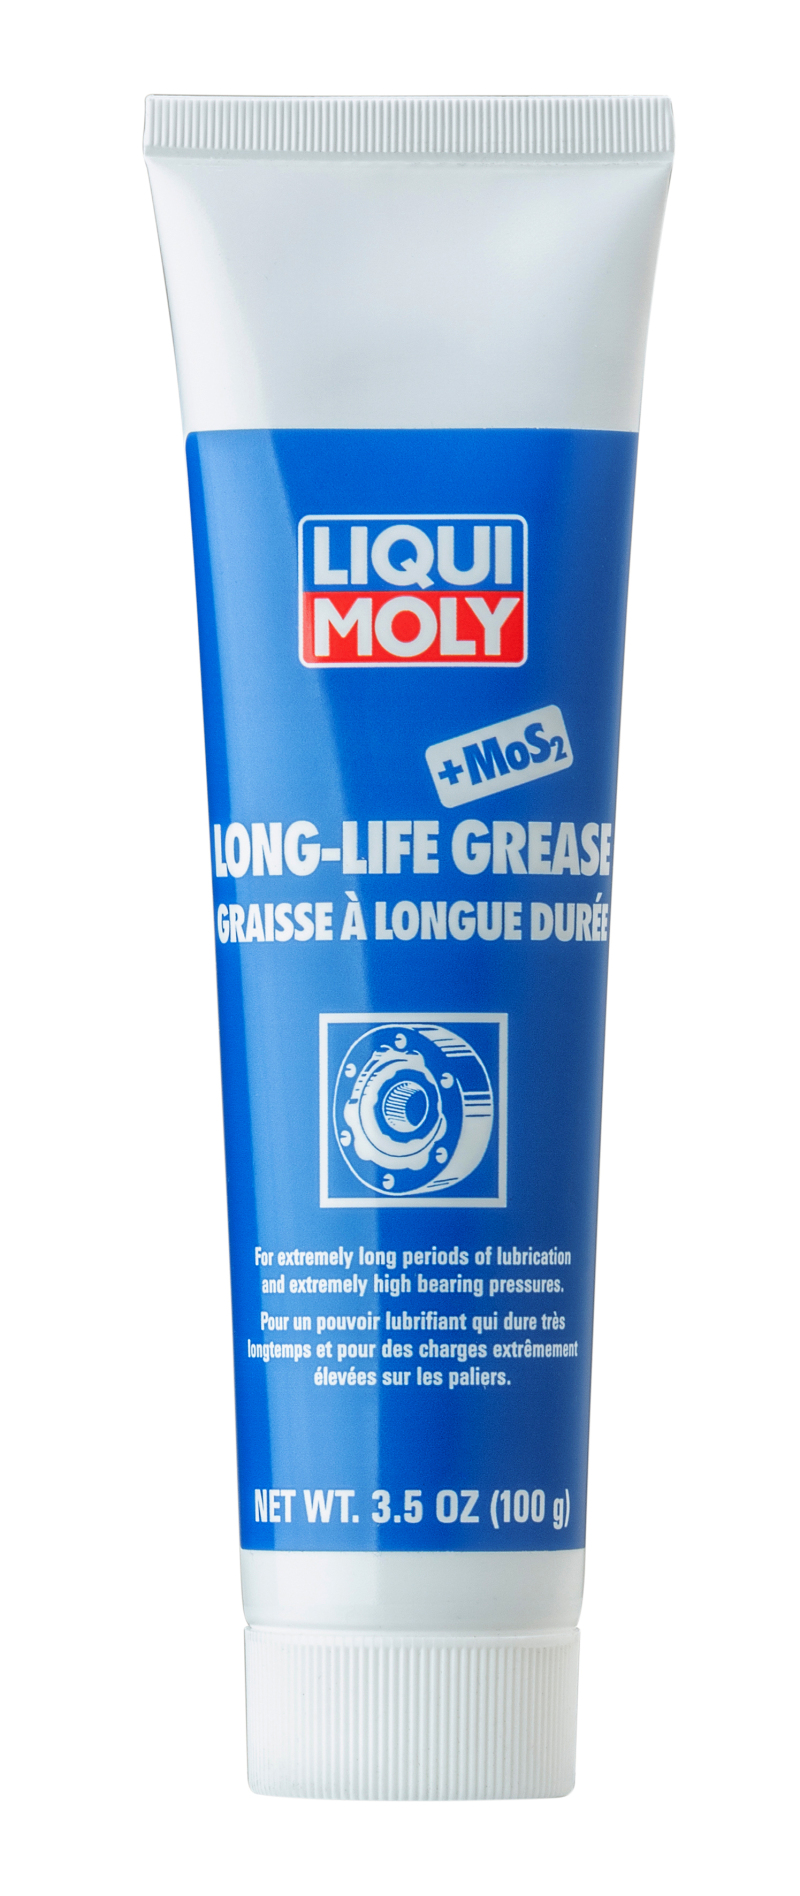 LIQUI MOLY 100g Long-Life Grease + MoS2 - 2003